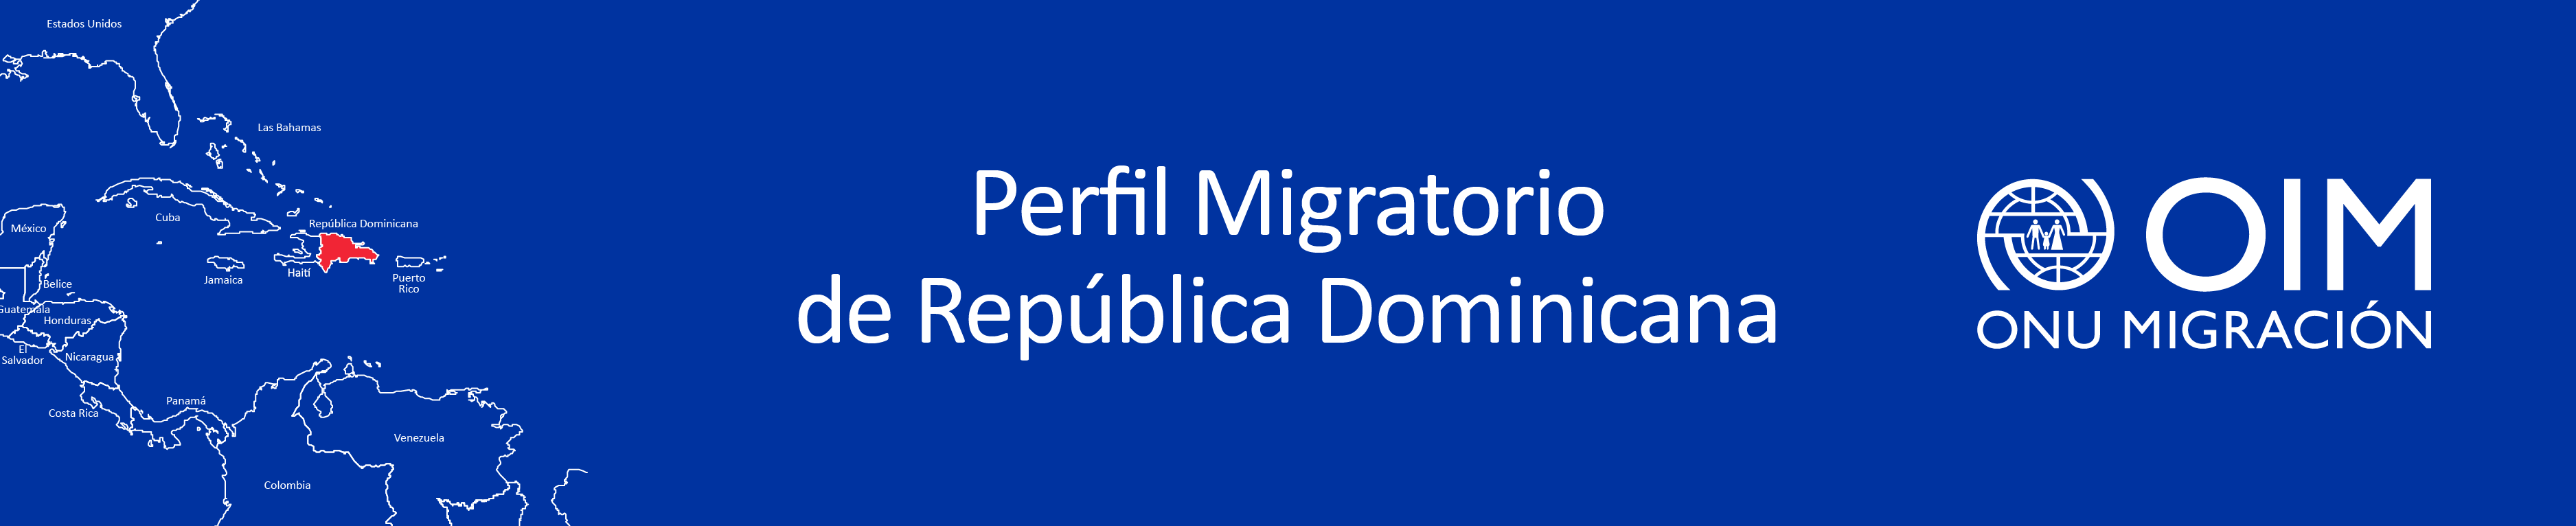 Perfil Migratorio de República Dominicana